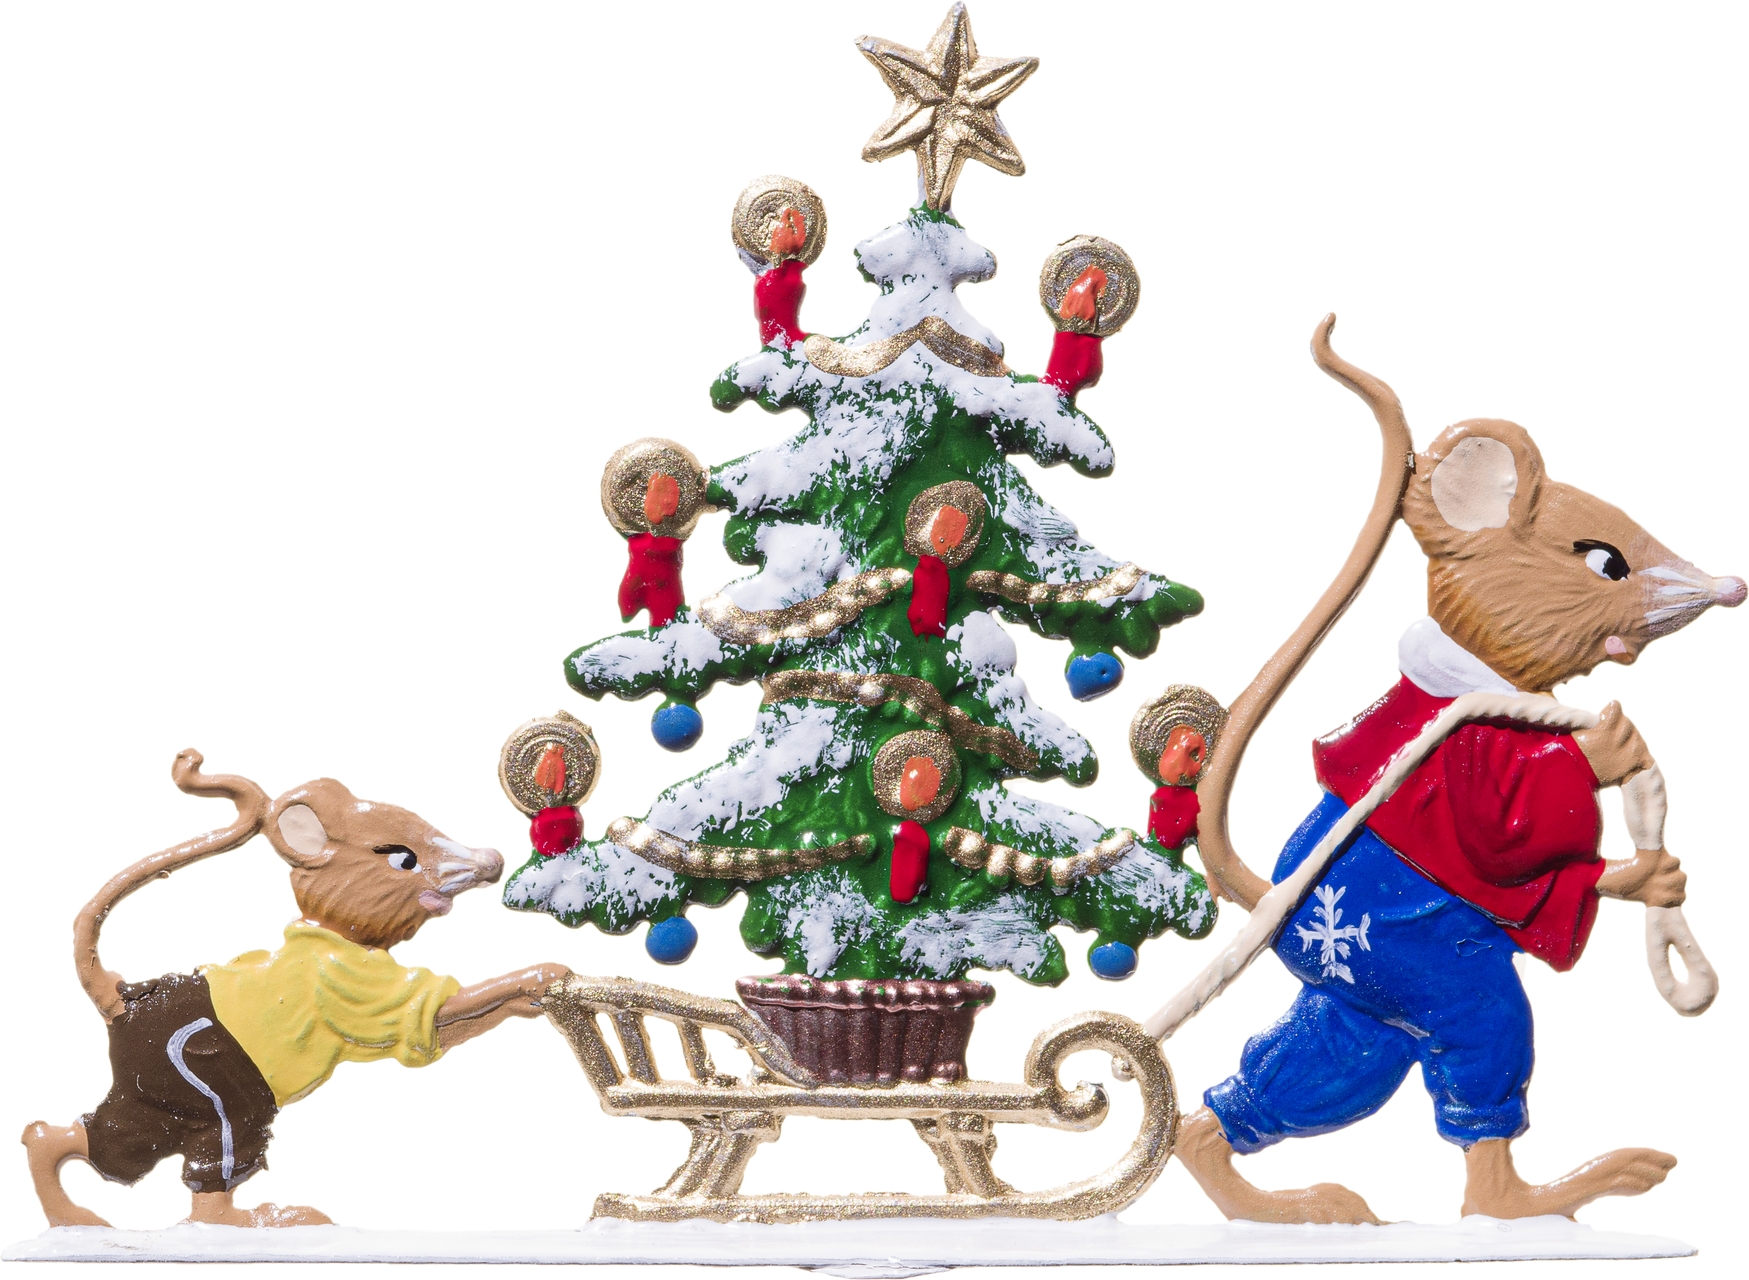 Mäuse transportieren Weihnachtsbaum